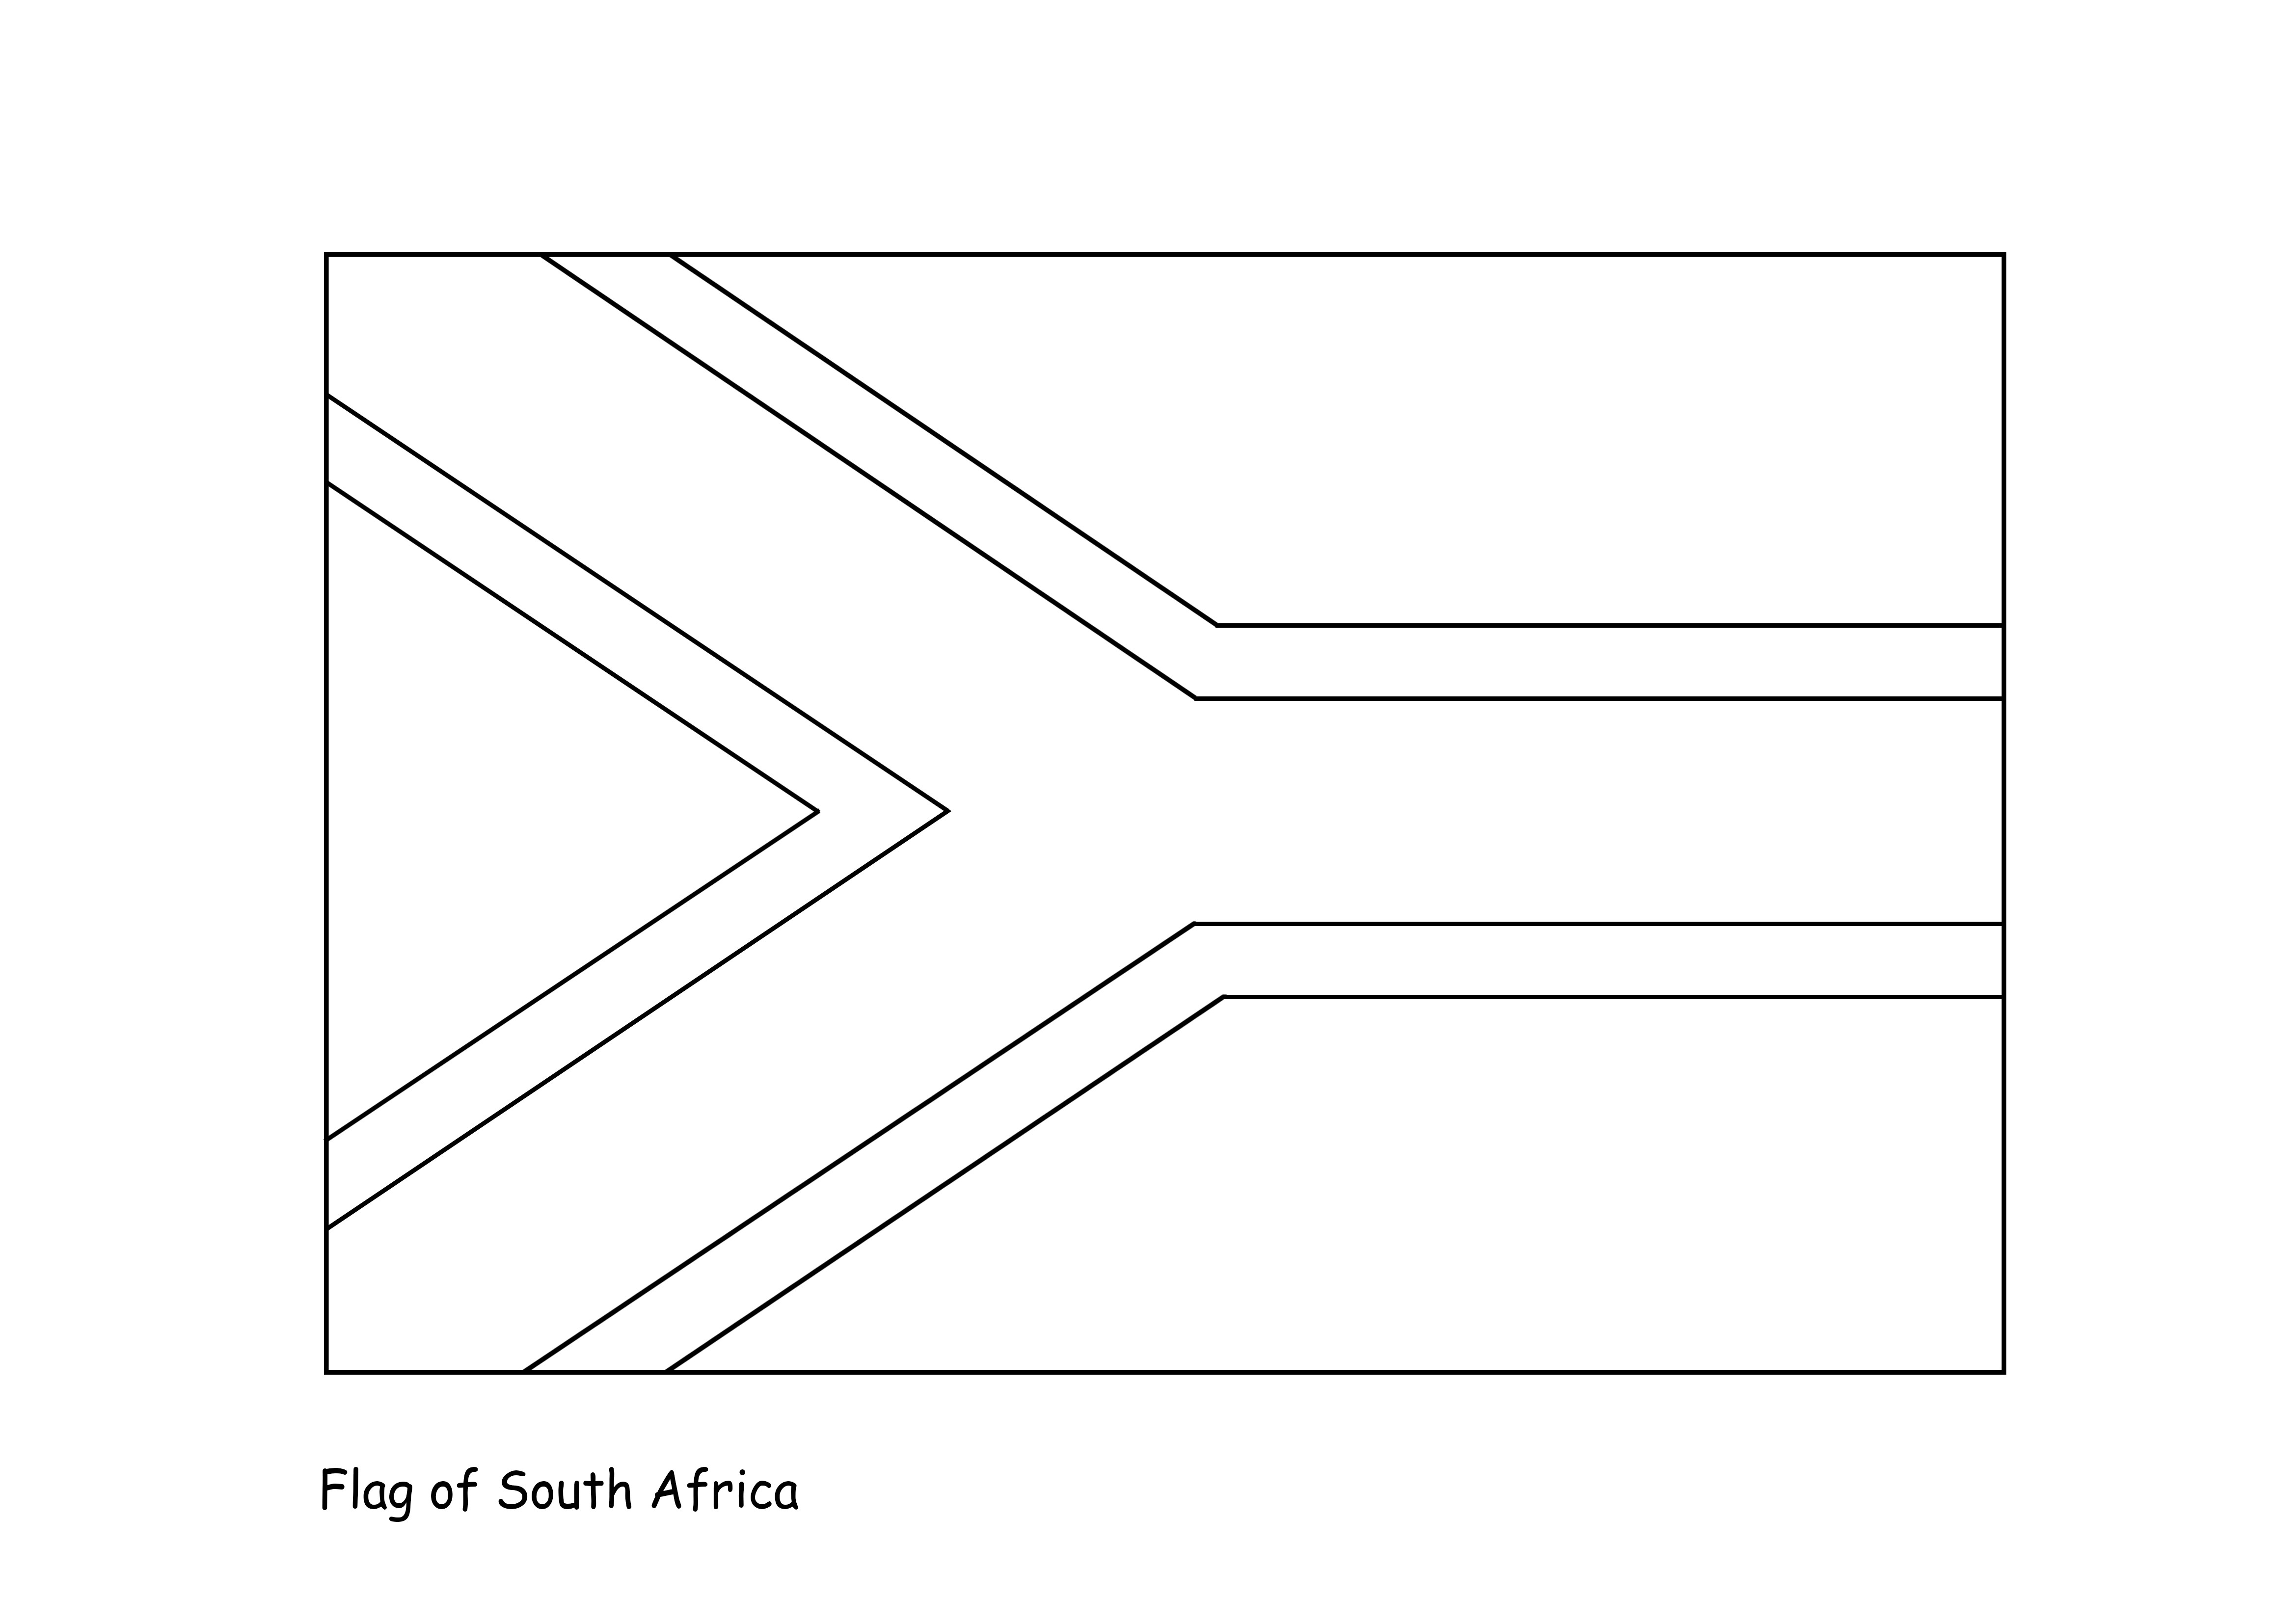 Güney Afrika bayrağı yazdırılacak ve renksiz